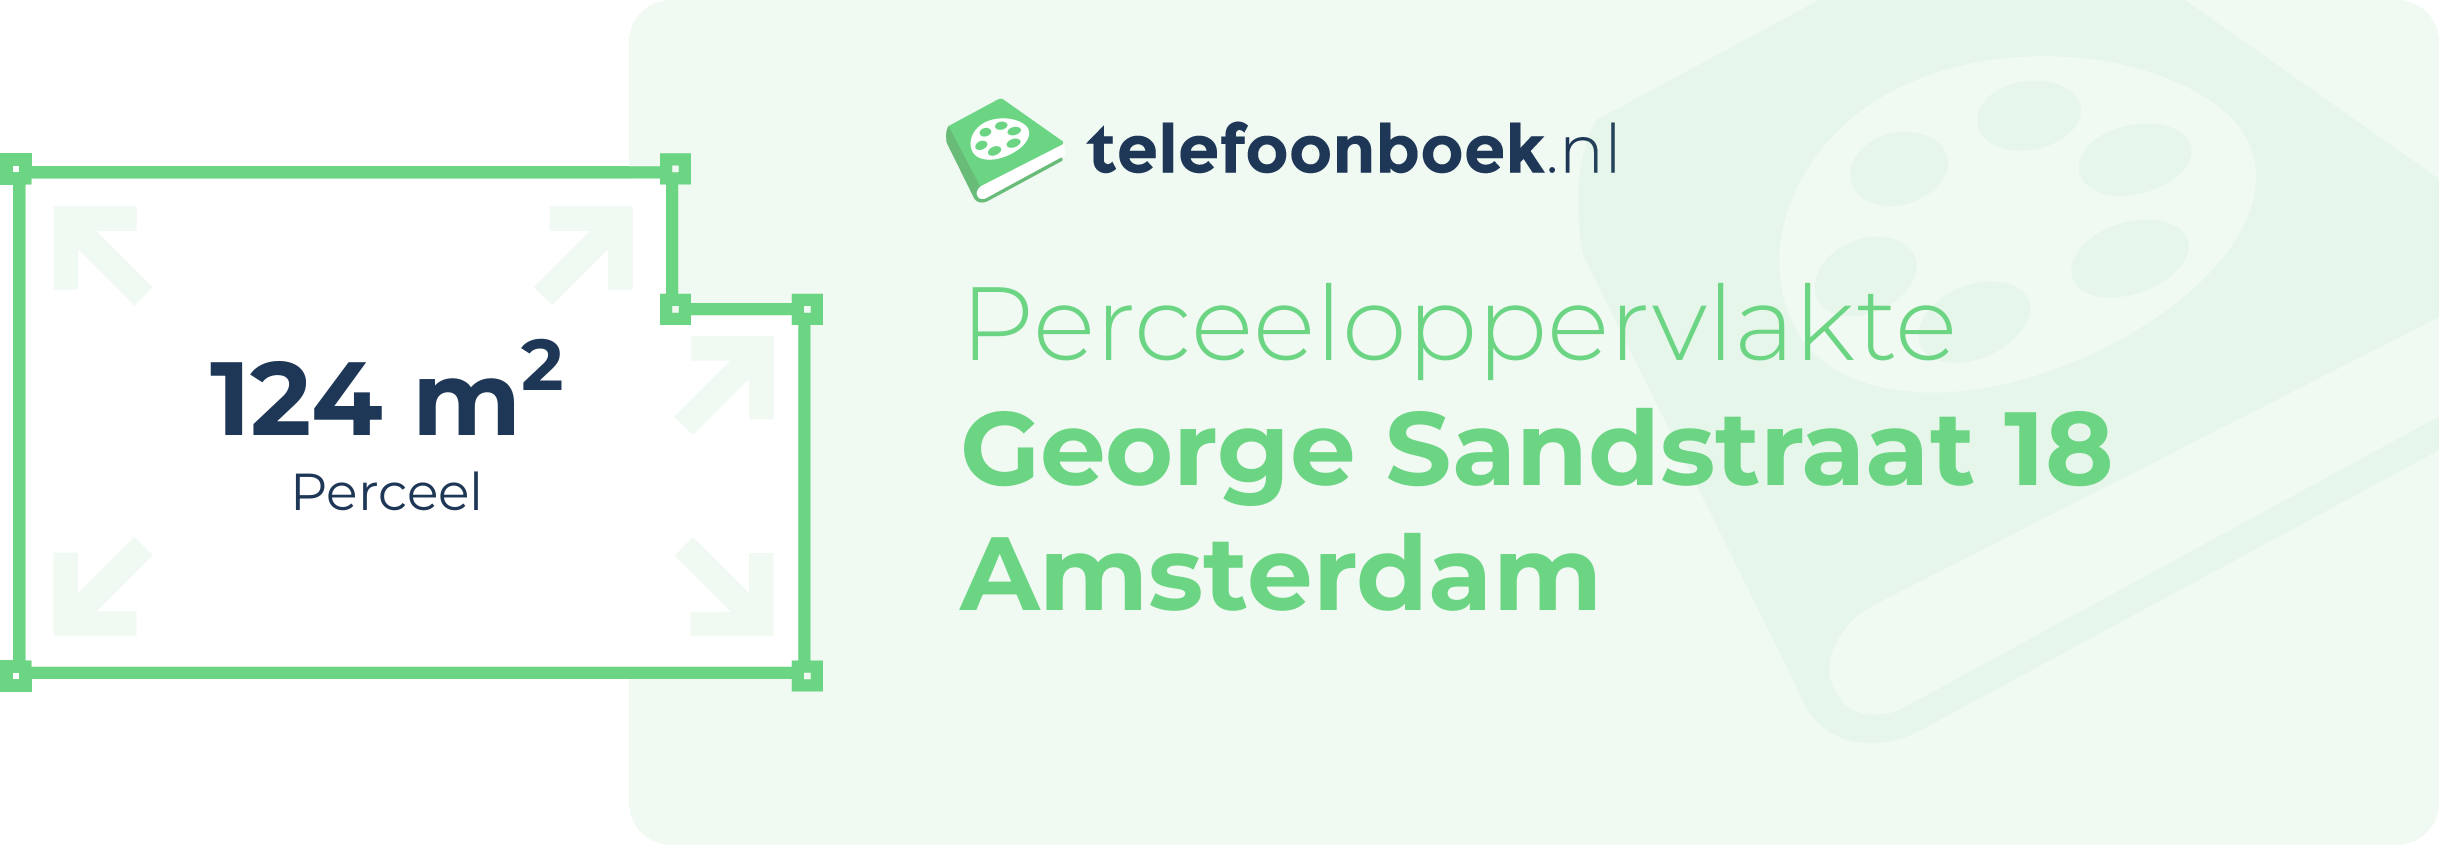 Perceeloppervlakte George Sandstraat 18 Amsterdam